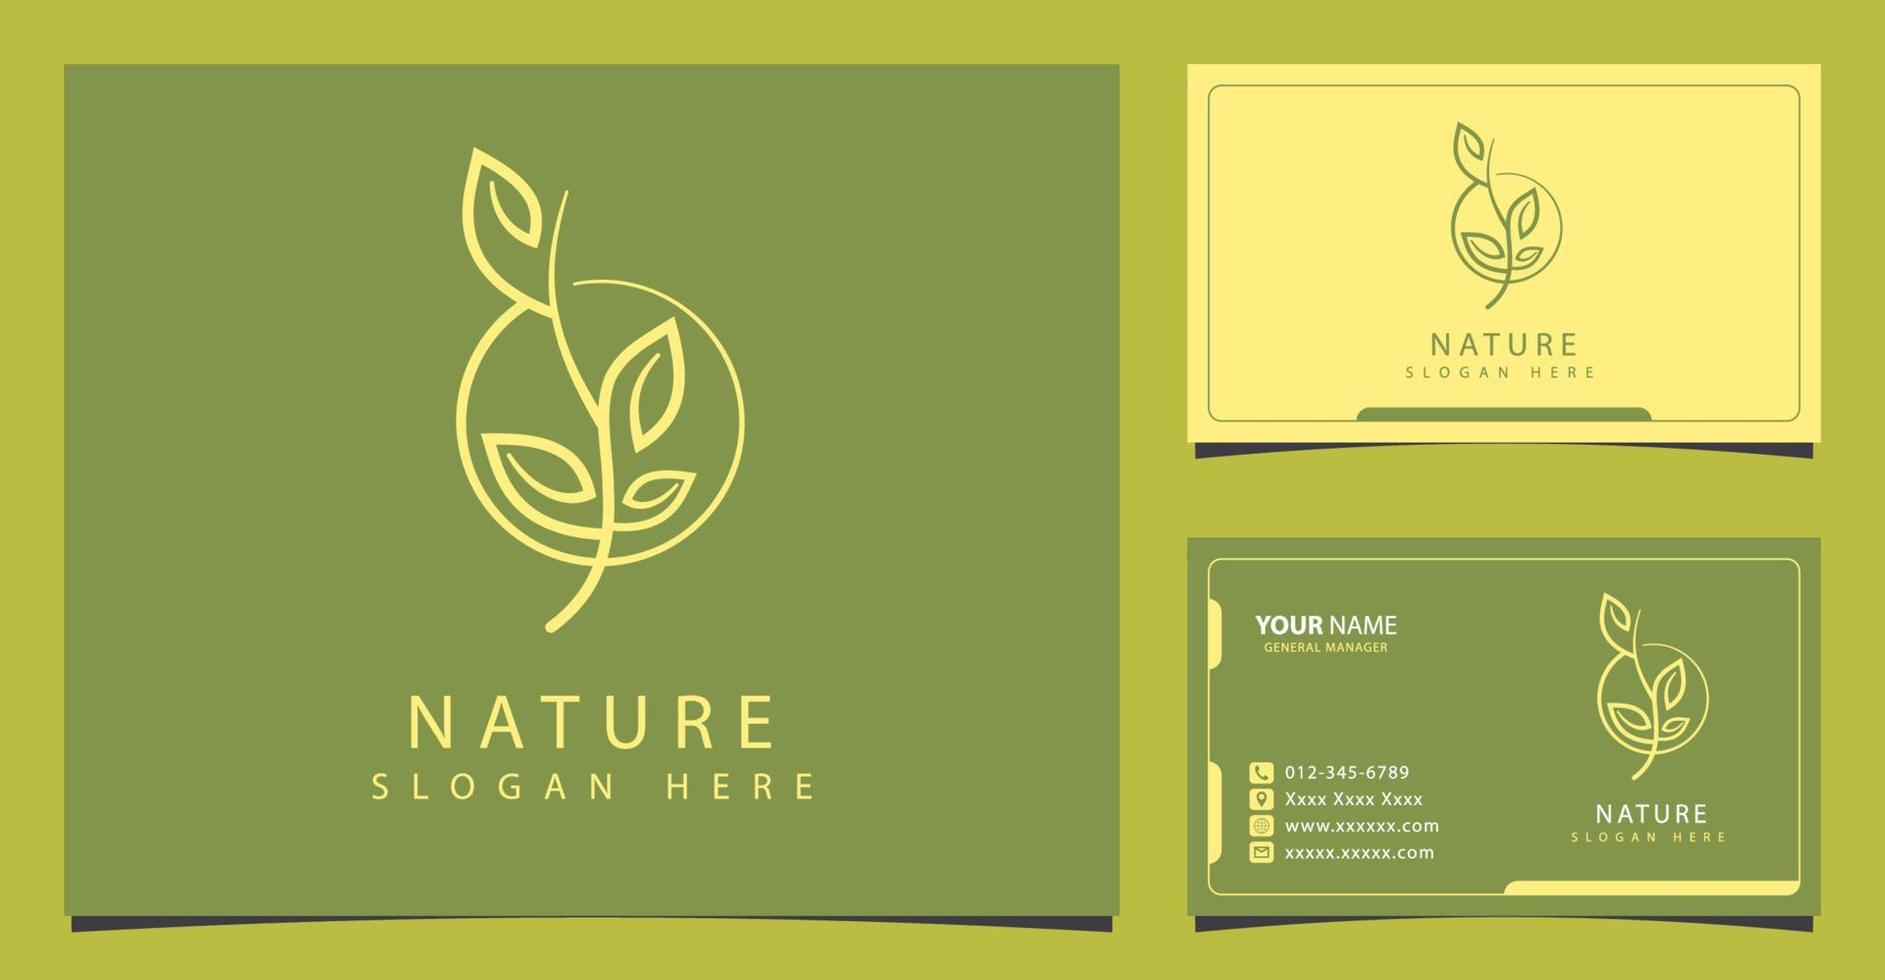 logo nature avec concept minimaliste et design de carte de visite vecteur